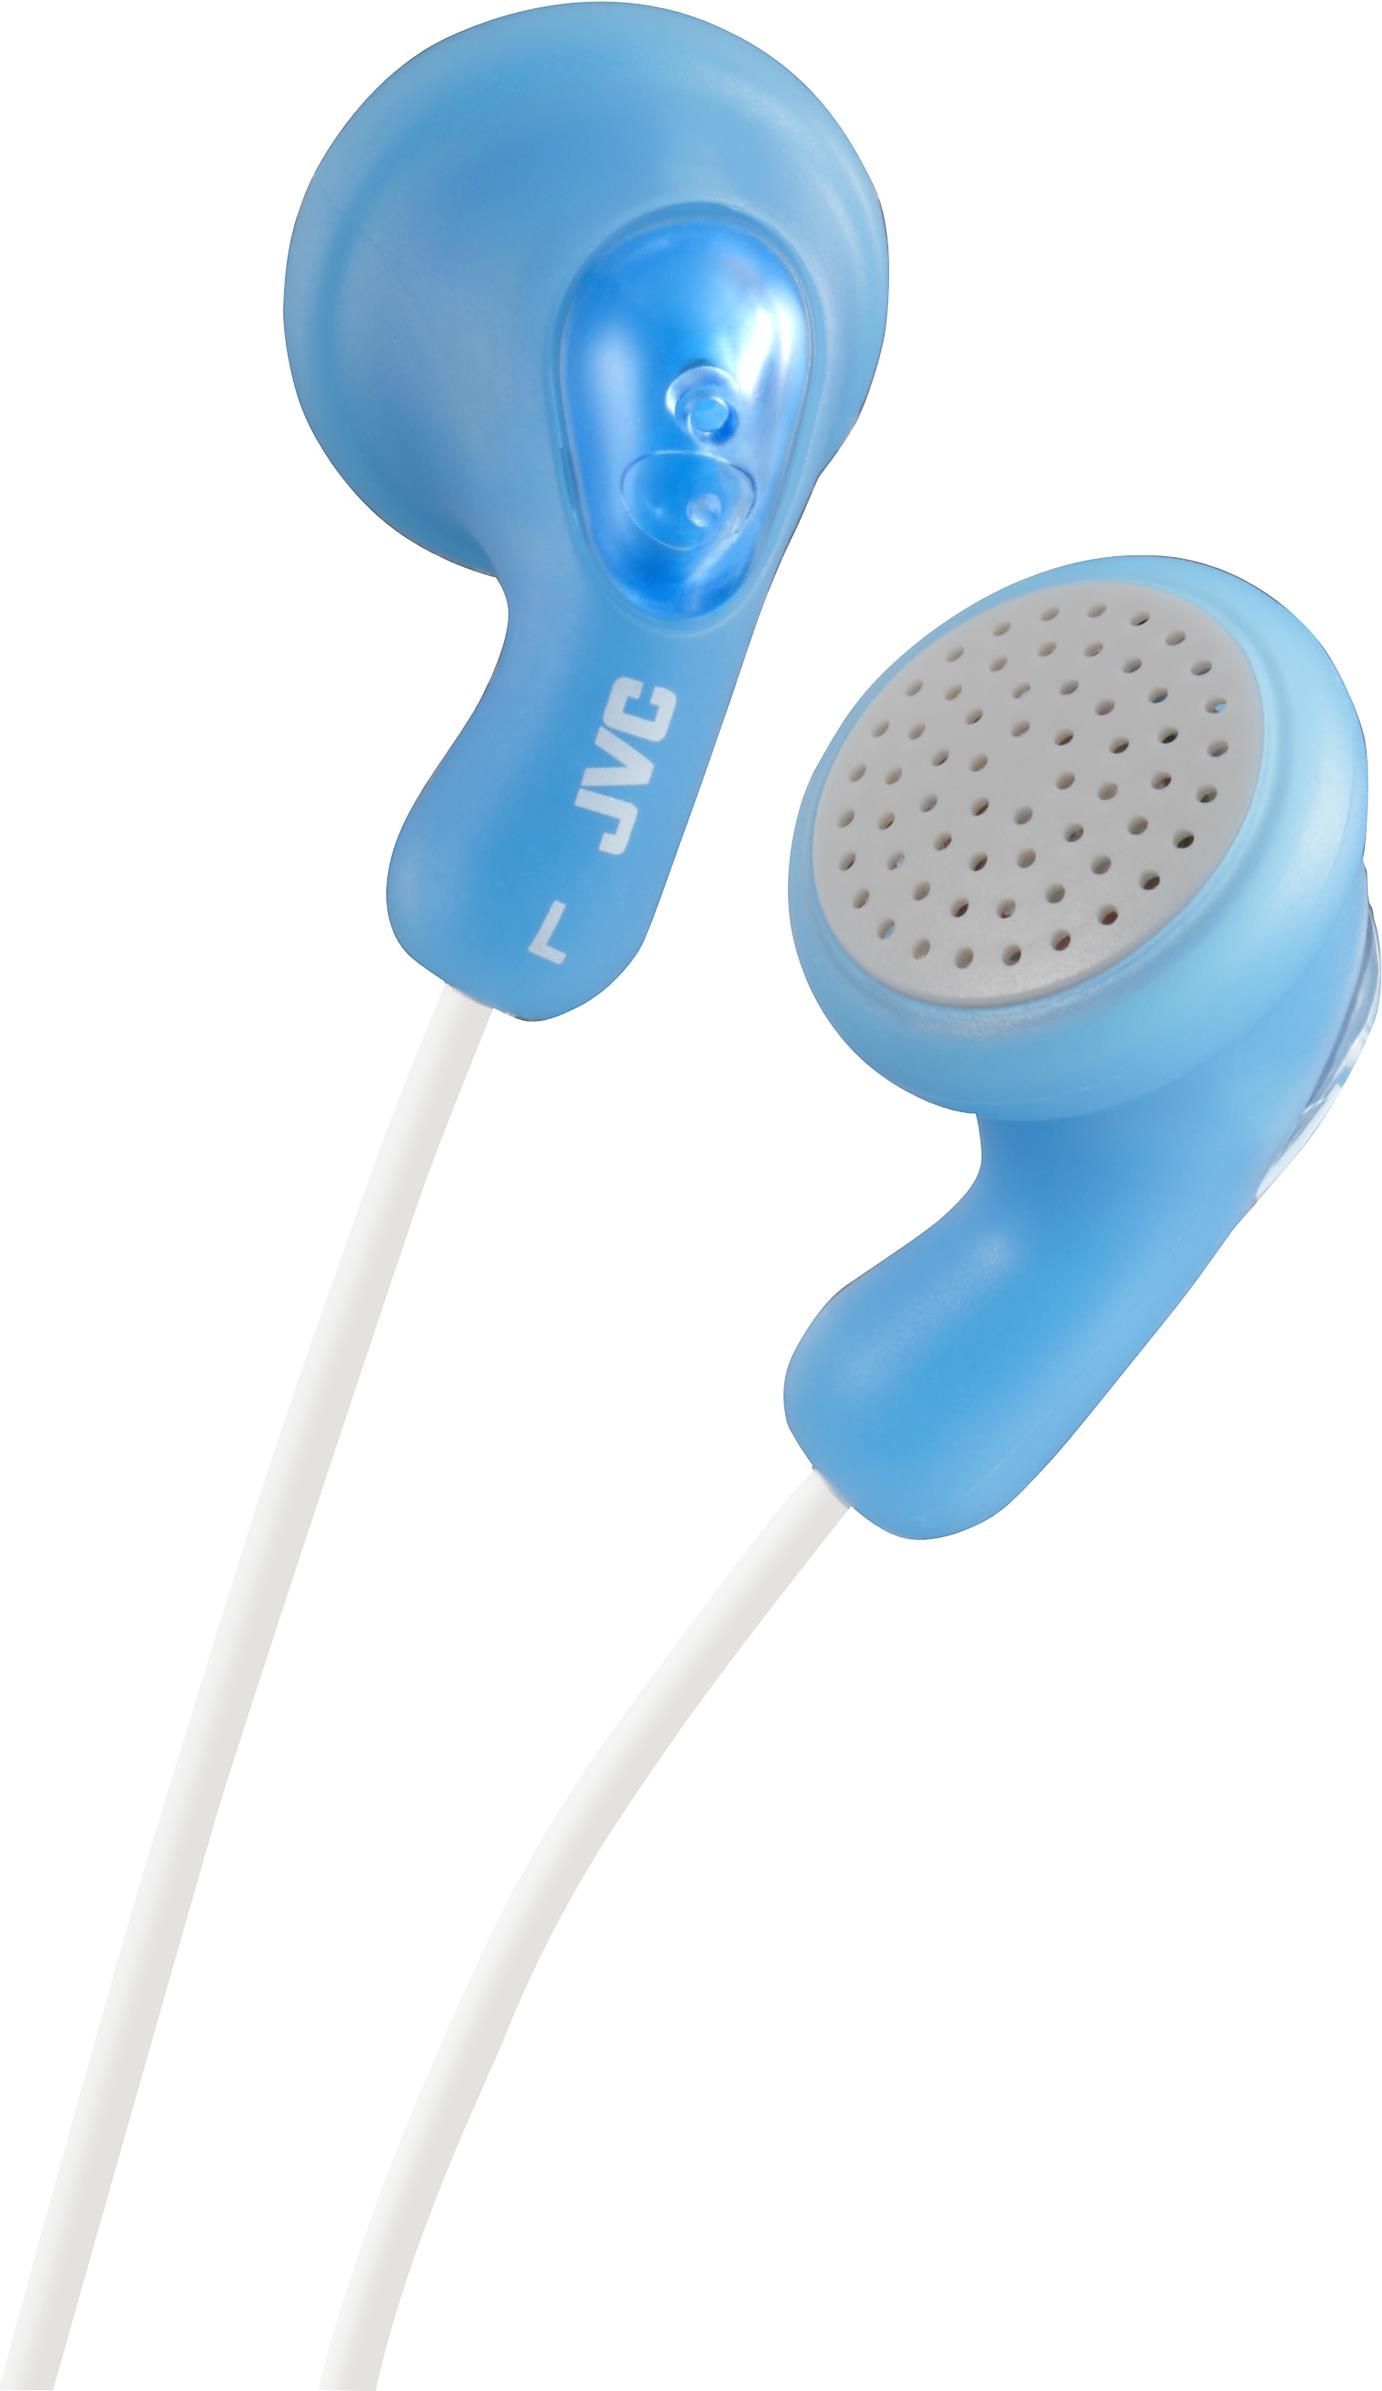 JVC HA-F14. Produkttyp: Kopfhörer. Übertragungstechnik: Kabelgebunden. Empfohlene Nutzung: Musik. Kopfhörerfrequenz: 16 - 20000 Hz. Kabellänge: 1 m. Gewicht: 17,1 g. Produktfarbe: Blau (HA-F14-AN-U)